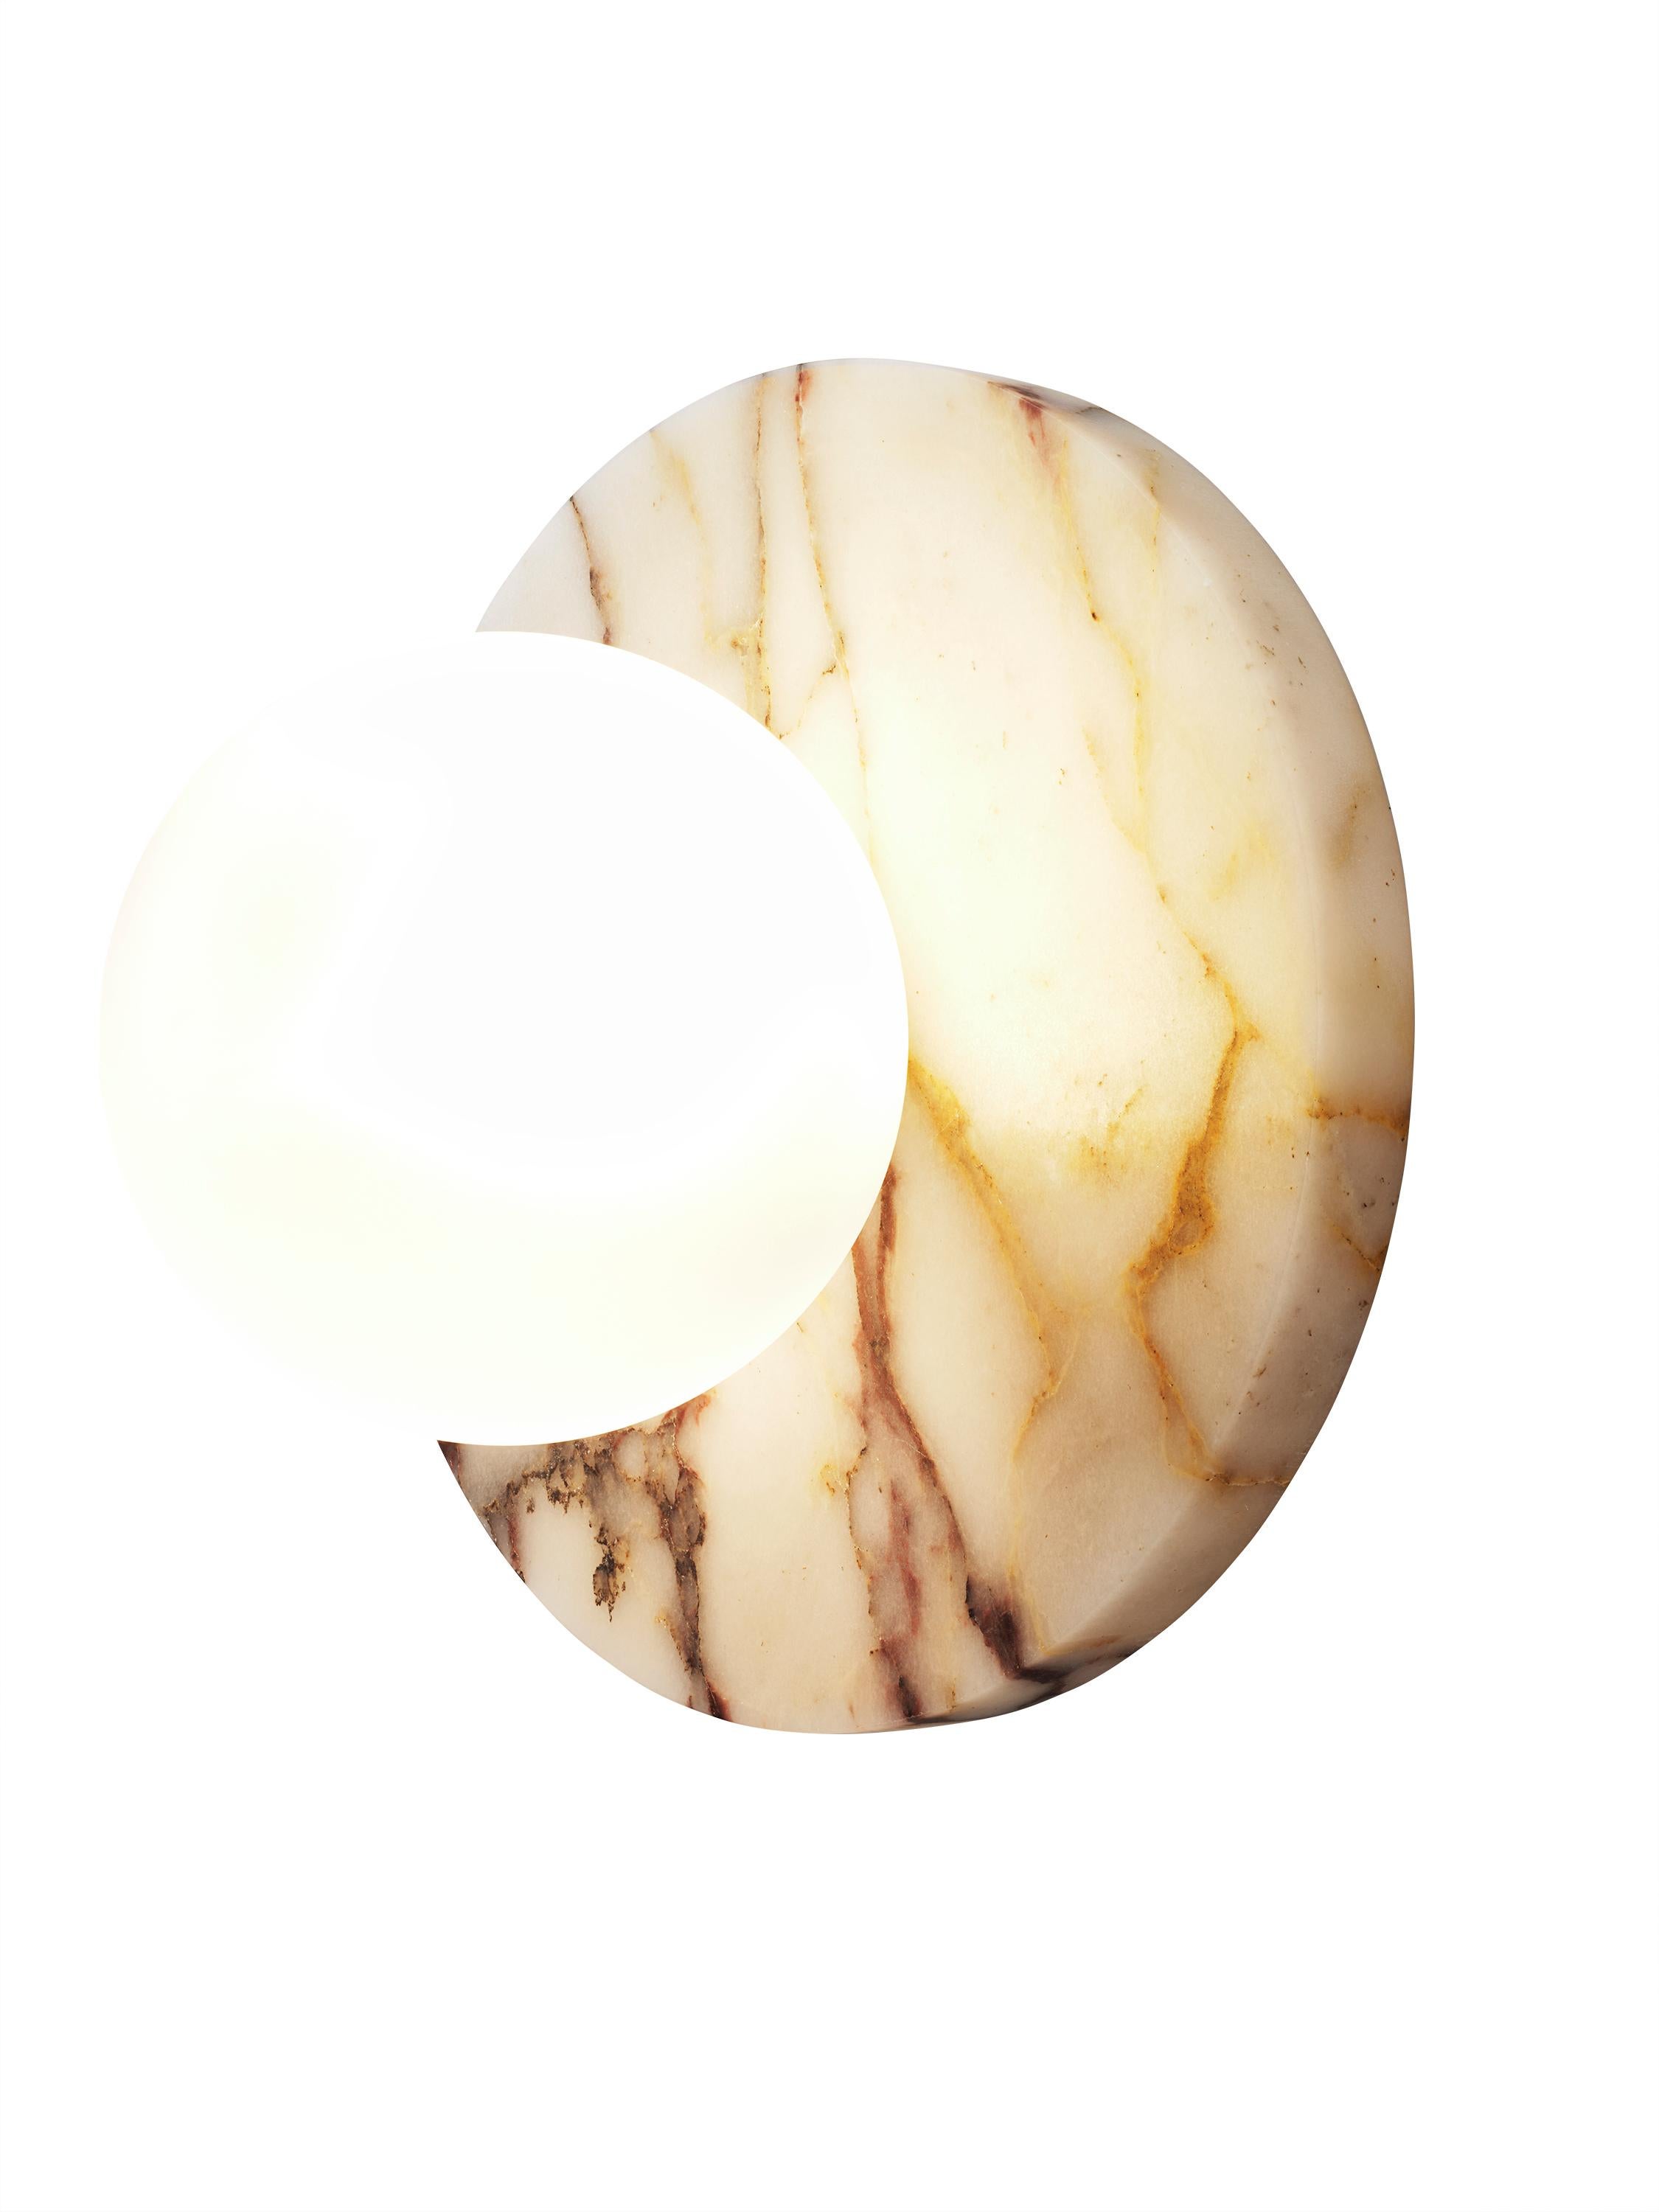 LUCIE FLUSHMOUNT
Voici le lampadaire Lucie en marbre Calacatta et verre, un hommage audacieux au design intemporel inspiré par les proportions gracieuses des boucles d'oreilles en perles emblématiques de Dior. La plaque arrière circulaire en pierre